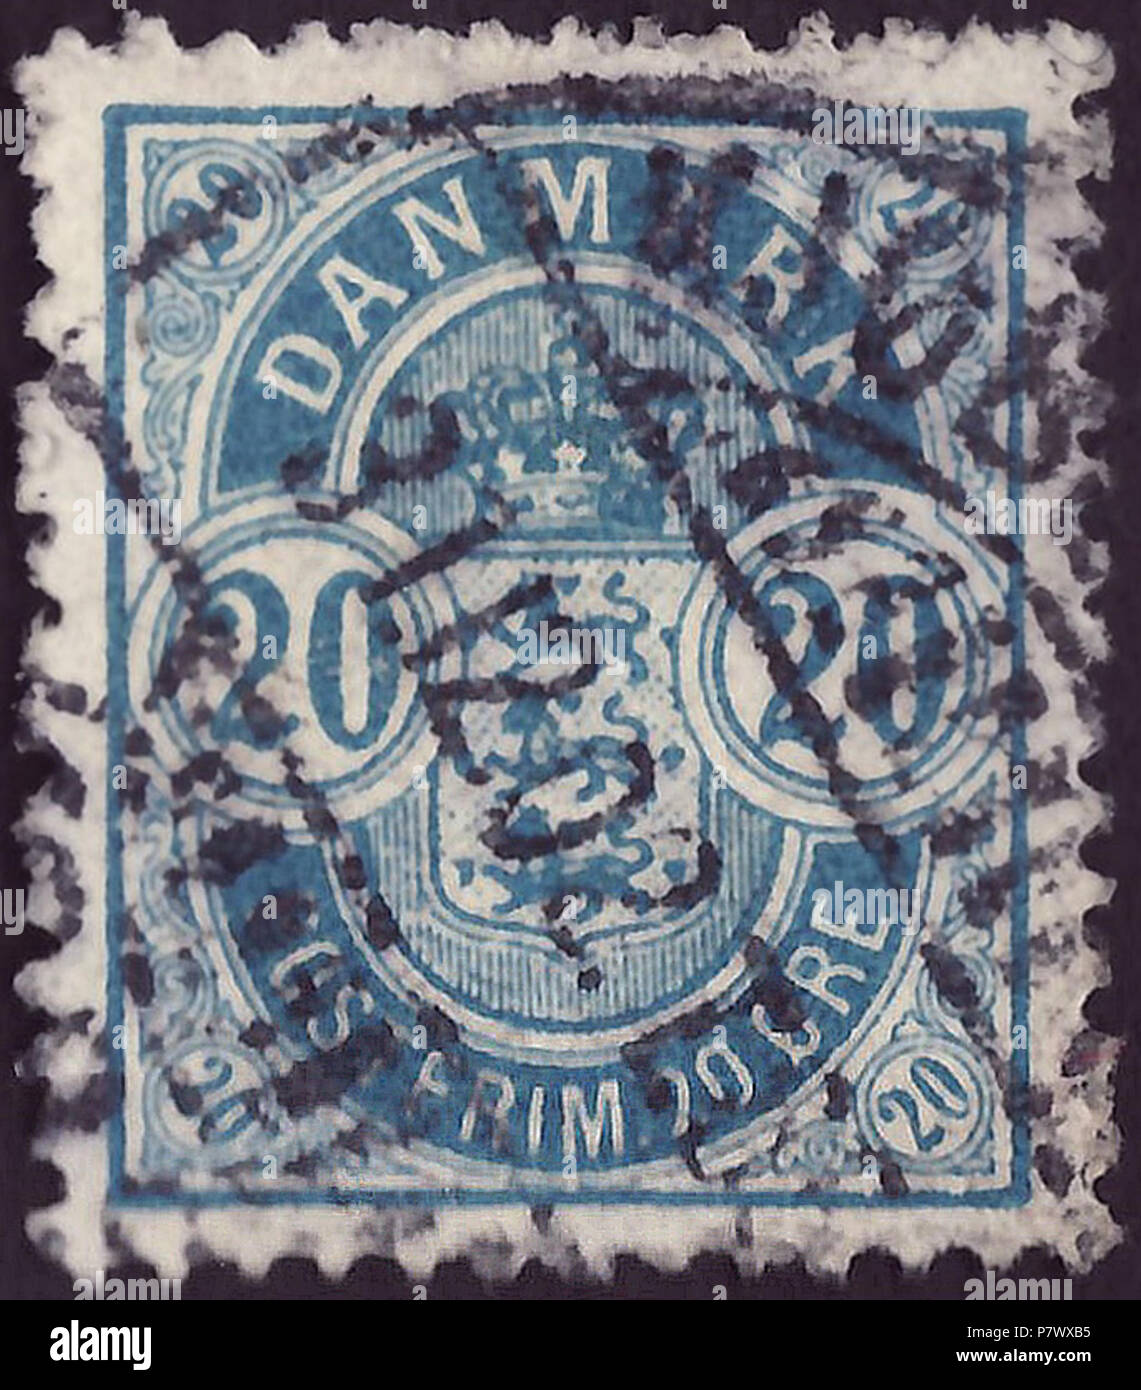 Sello del Reino de Dinamarca; 1895; sello definitivo de la cuestión "Escudo en pie ovalado con números'; dibujo nuevo formato con espaciado de perforación; las características especiales: (a) números grandes en las esquinas como en la edición original de 1882; (b) perforación 12¾; c) Dinamarca filigrana nº 2 (Michel: 1Y) (gran corona) (d) más largas y delgadas patas en la letra 'M' en "Dinamarca" de la variante con pequeños números en la esquina (1882), sello postal en Copenhague, 1902 Sello: Michel: nº 36yb; Yvert et Tellier: nº 37a; AFA: nº 36B Color: azul marca de agua: Dinamarca nº 2 (Michel: No. Foto de stock